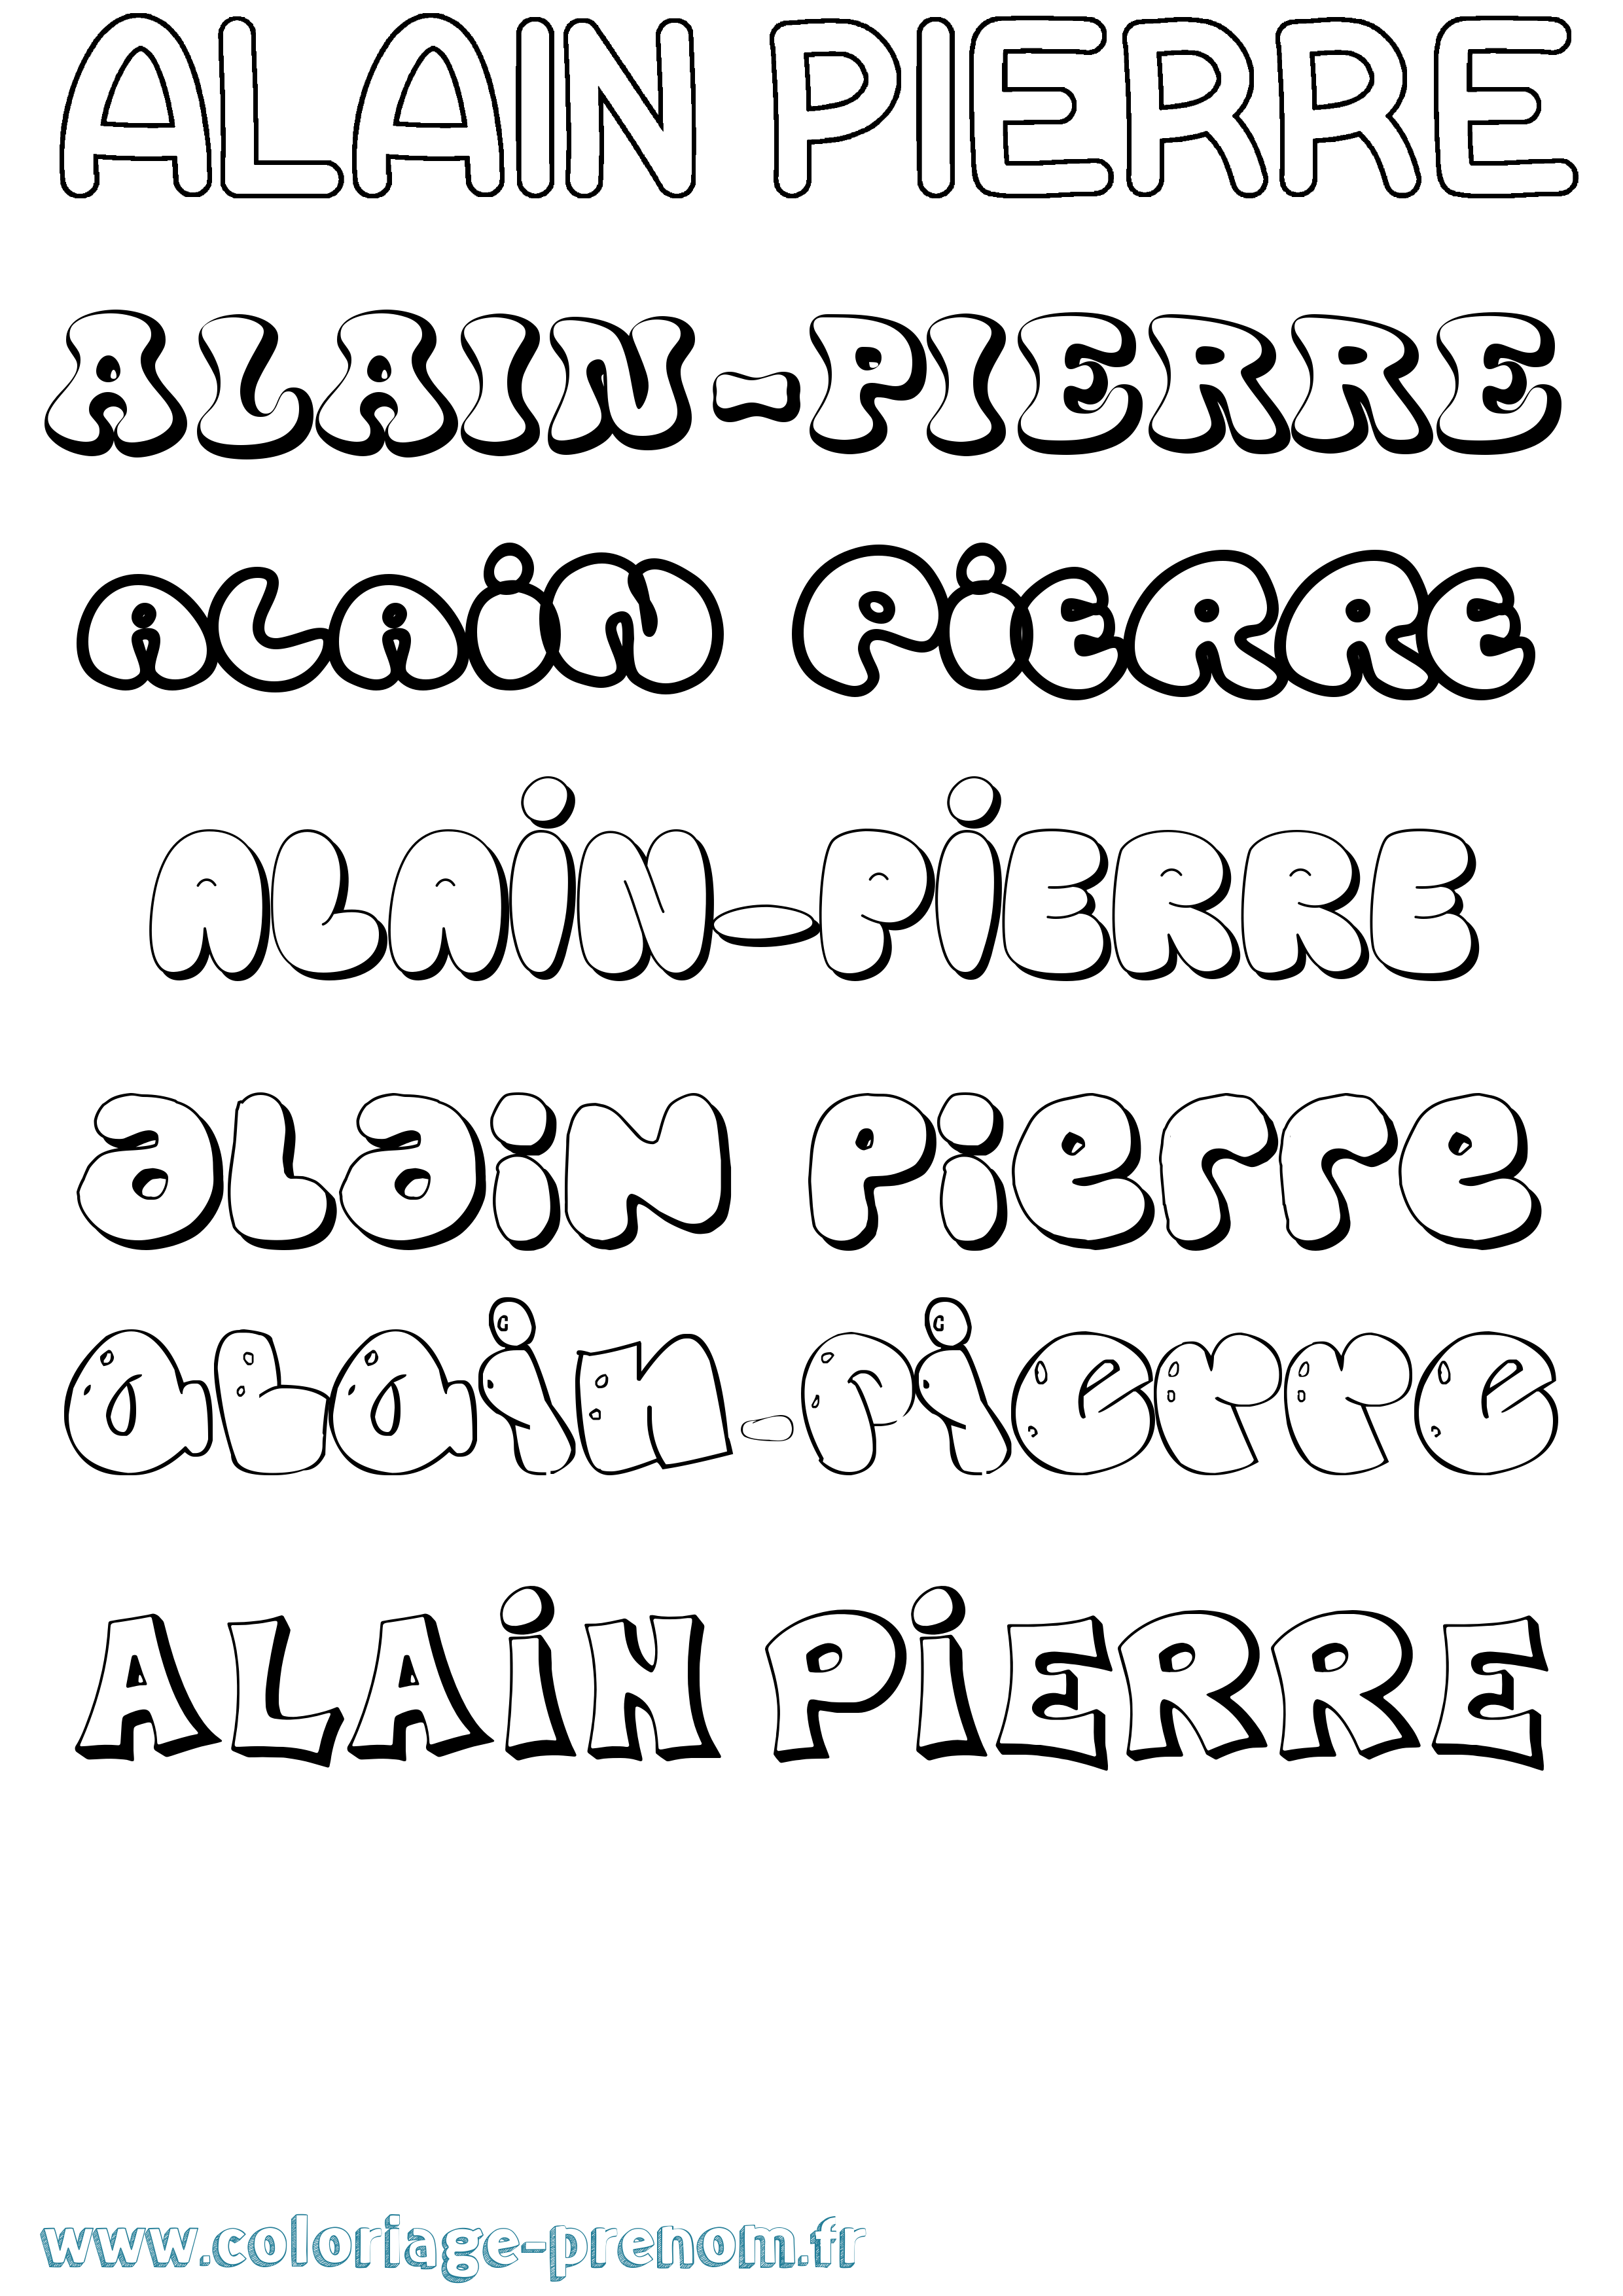 Coloriage prénom Alain-Pierre Bubble